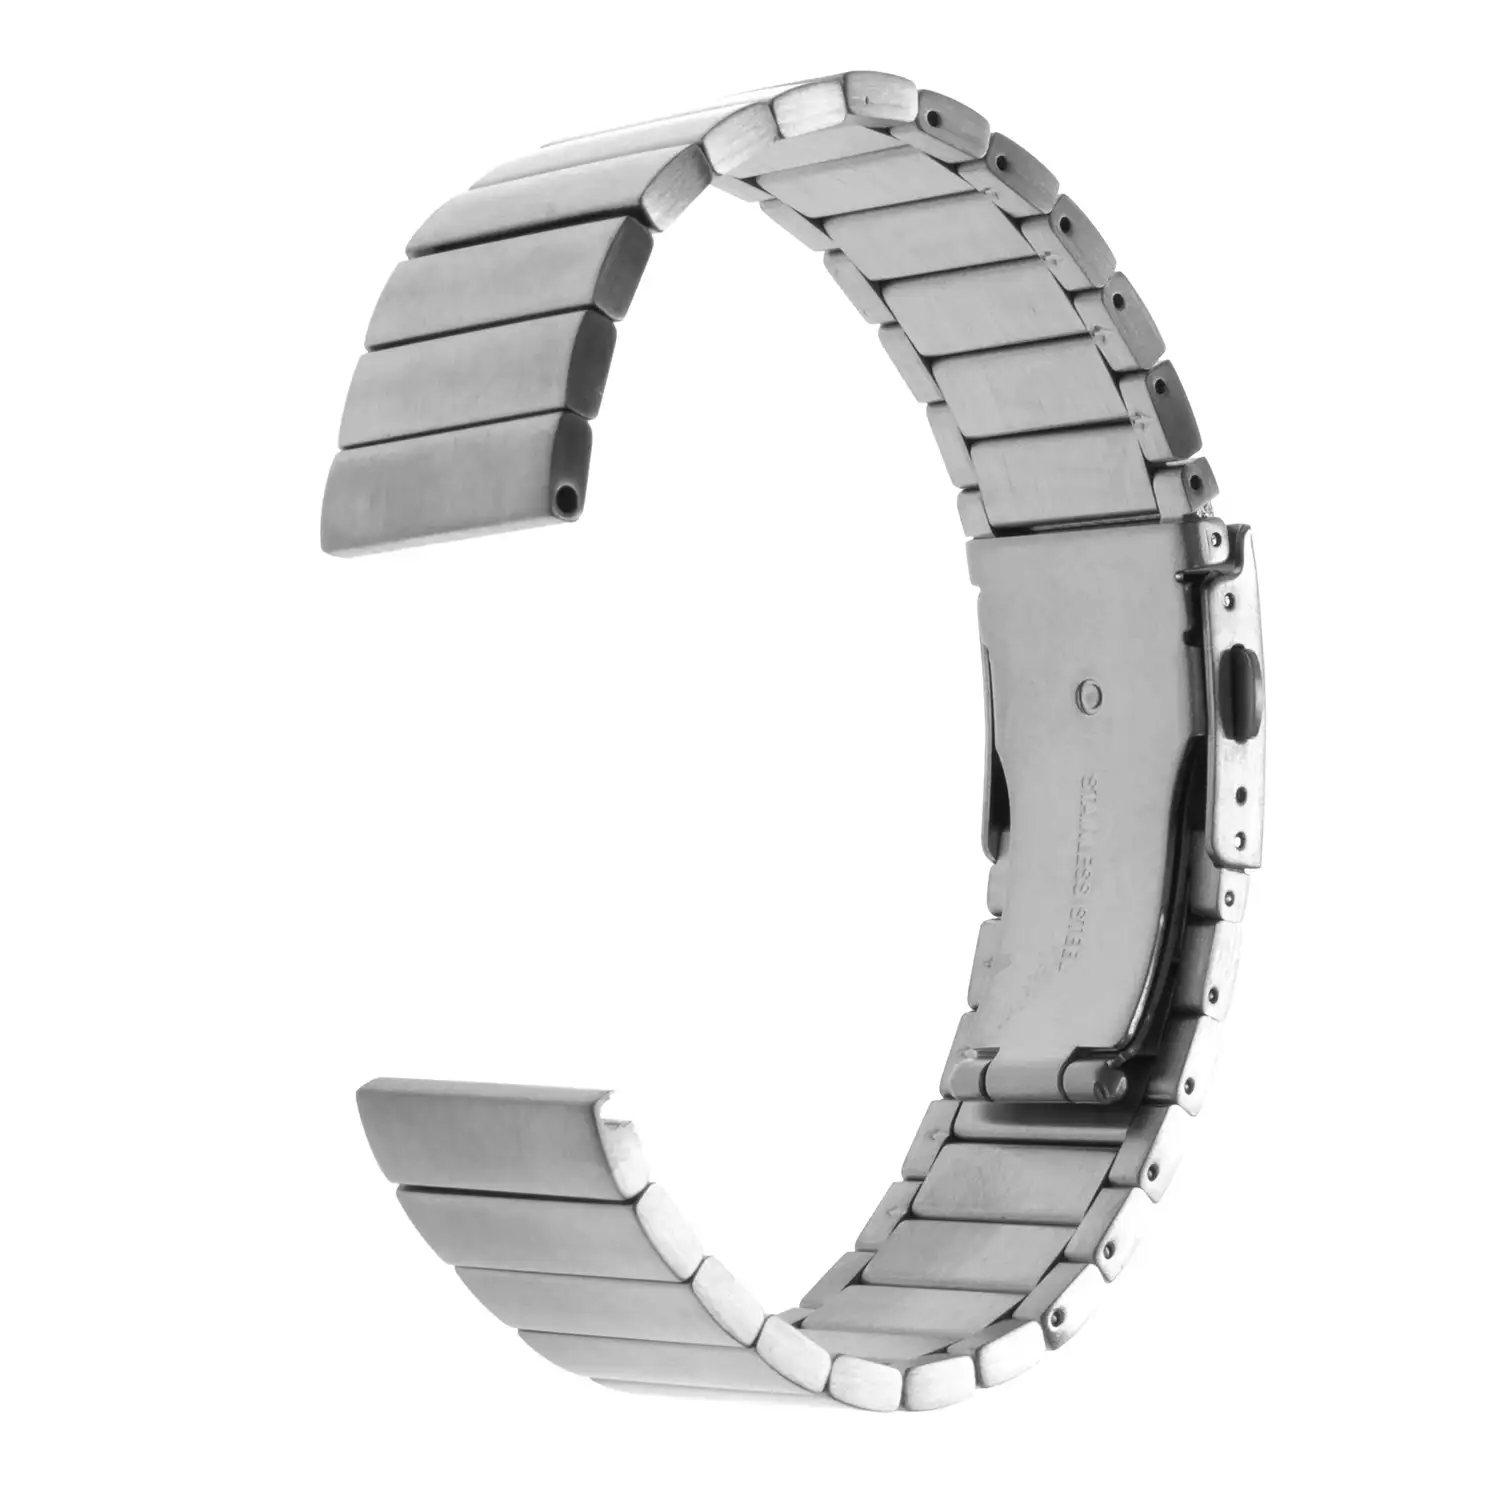 Correa universal de acero inoxidable para relojes de 22mm.Sistema Quick Release de fácil cambio.